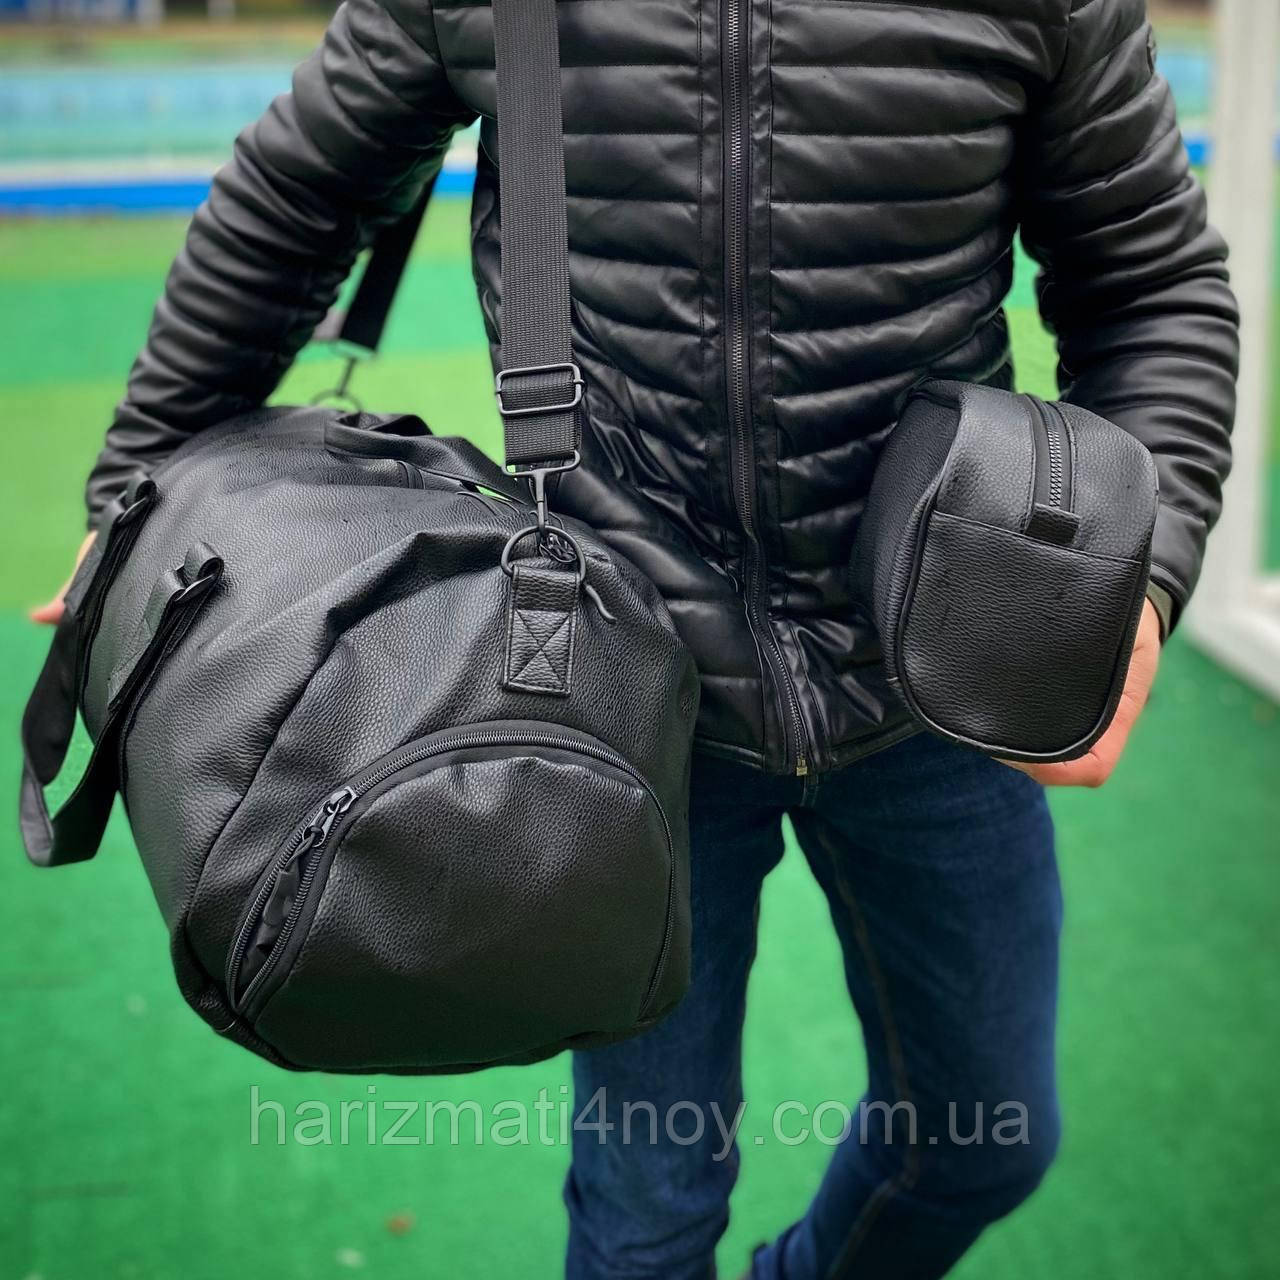 Чоловіча дорожня та спортивна сумка + косметичка/органайзер, екошкіра стильний і місткий комплект